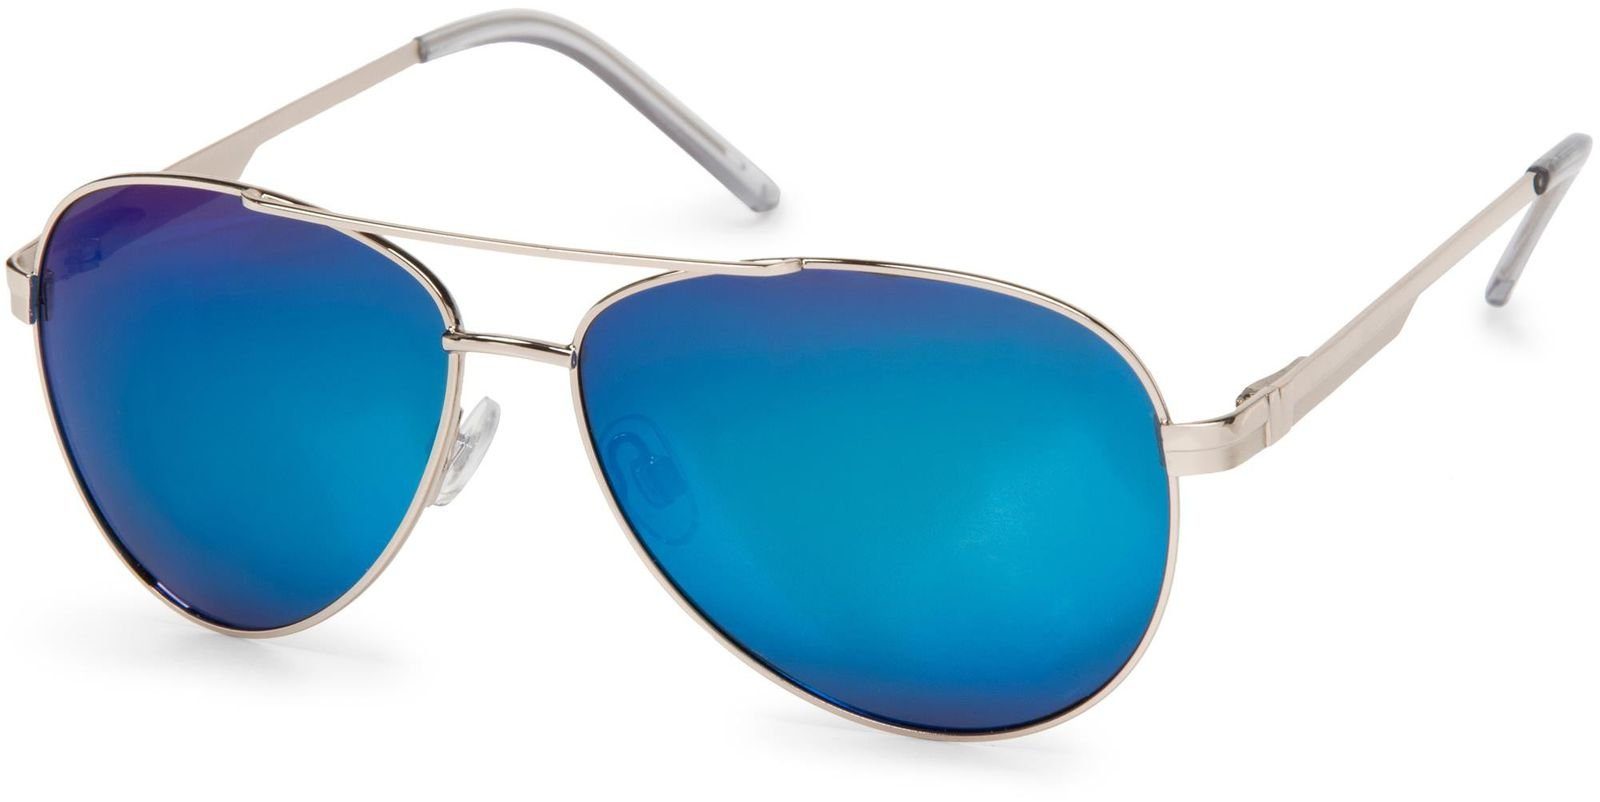 (1-St) Sonnenbrille styleBREAKER / Gestell Silber verspiegelt Glas Polarisiert Blau